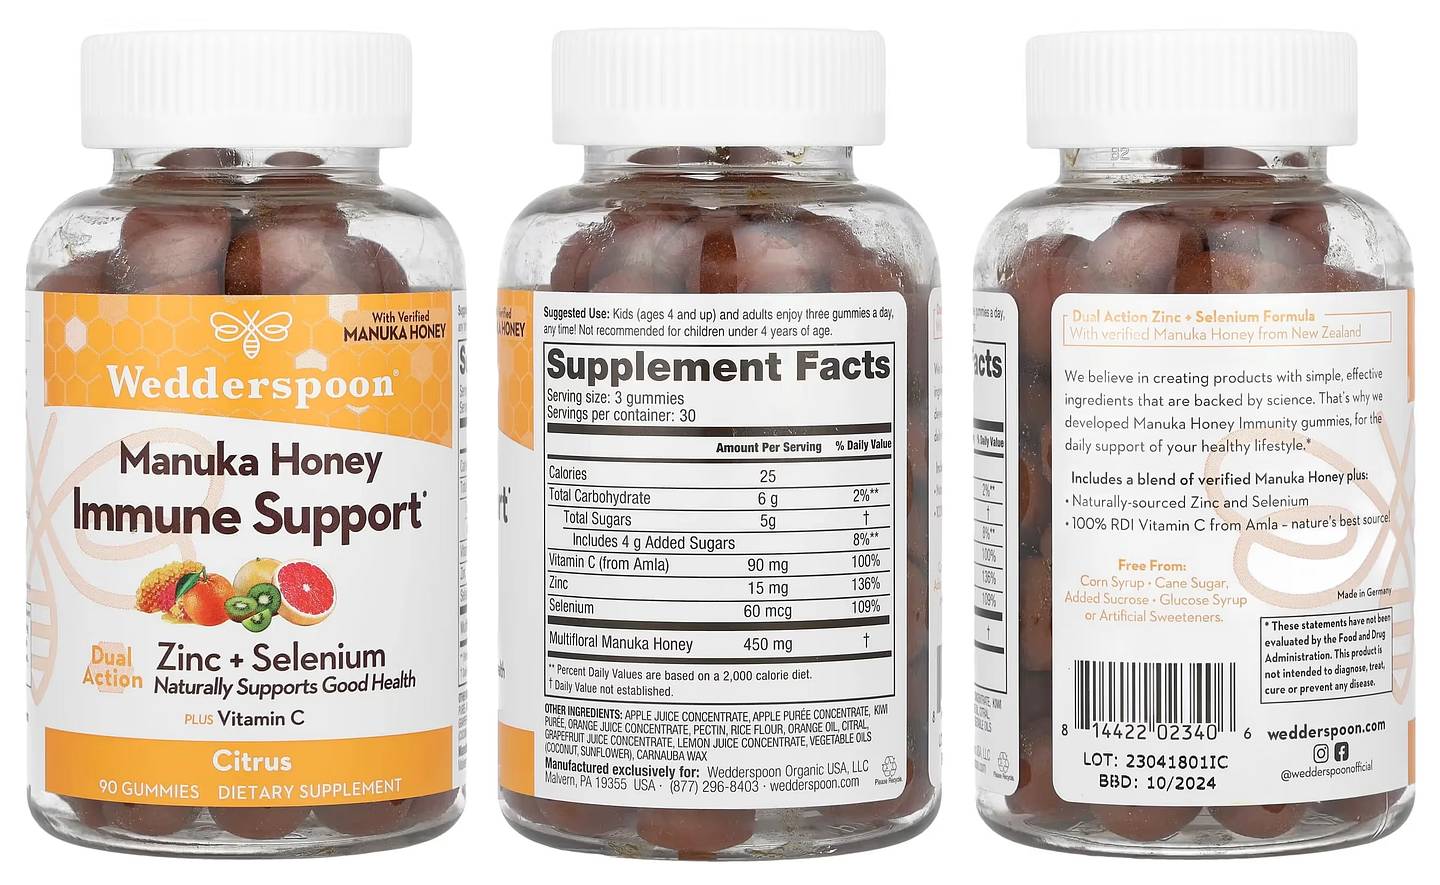 Wedderspoon, Manuka Honey Immunity Gummies packaging